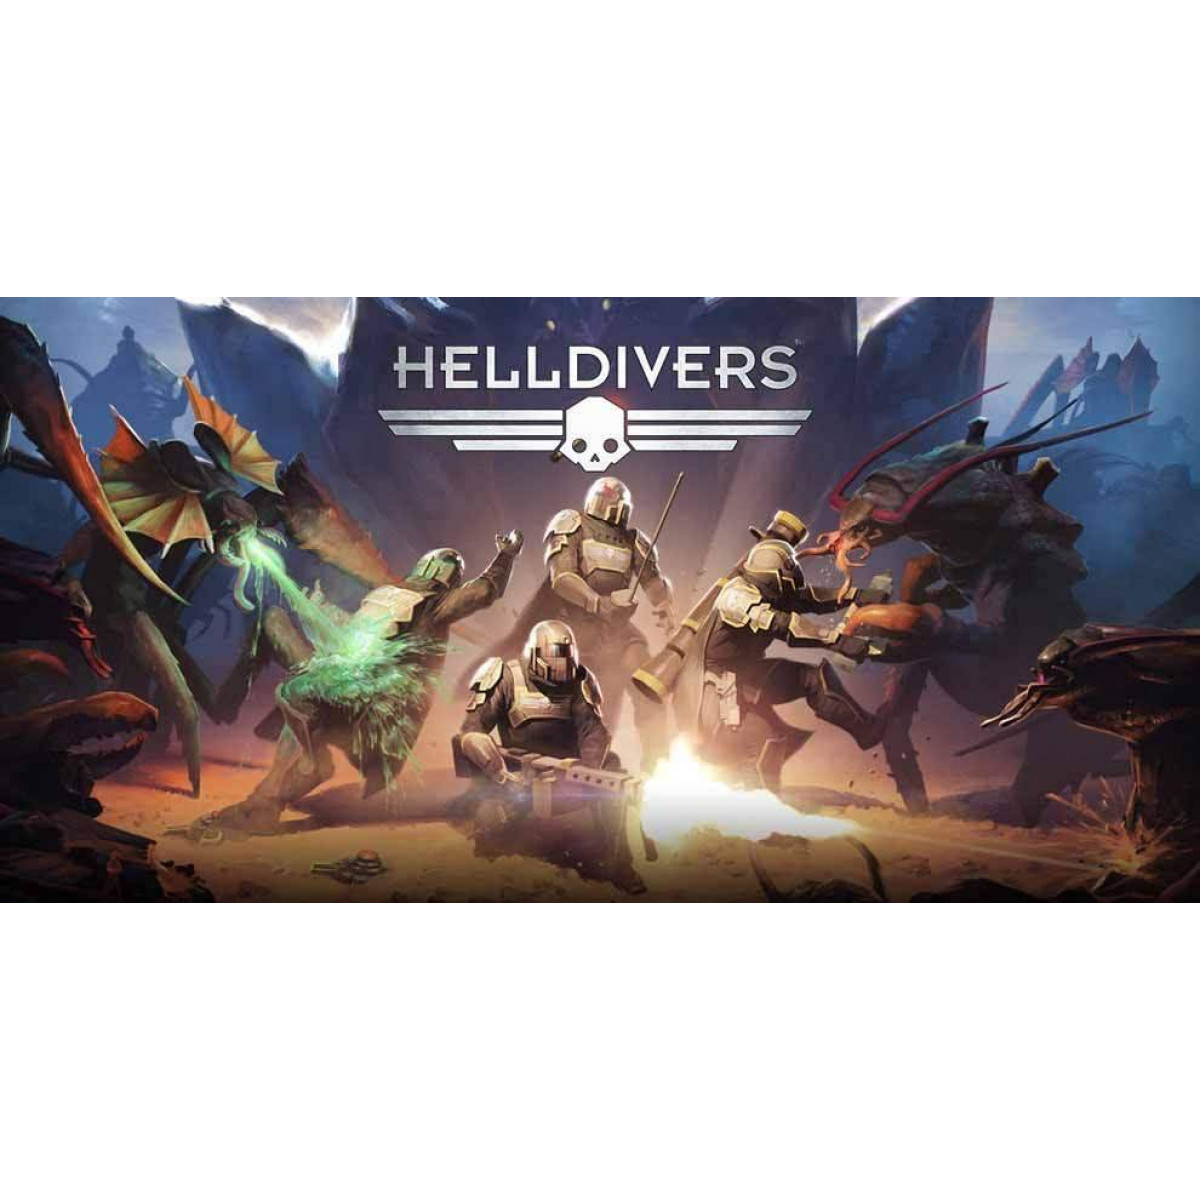 Helldivers game pass. DLC Helldivers 2. Helldivers 1. Helldivers персонажи арт. Helldivers геймплей.